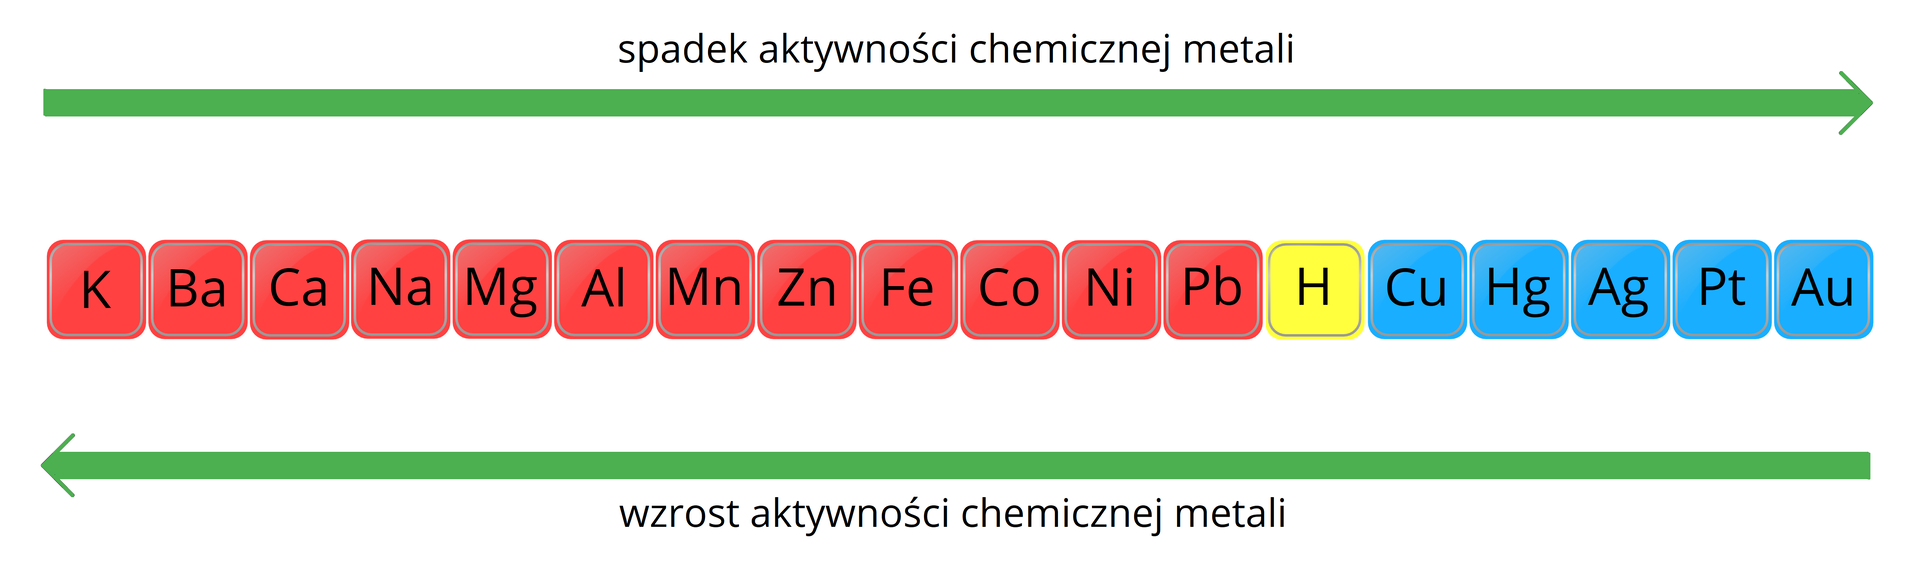 Ilustracja przedstawiająca w schematyczny sposób wzrost, strzałka w lewo, oraz spadek, strzałka w prawo aktywności chemicznej wybranych metali. Od lewej zaznaczone kolorem czerwonym: potas K, bar Ba, wapń Ca, sód Na, magnez Mg, glin Al, mangan Mn, cynk Zn, żelazo Fe, kobalt Co, nikiel Ni, ołów Pb. Na żółto zaznaczony wodór H. Dalszy ciąg szeregu metali na niebiesko: miedź Cu, rtęć Hg, srebro Ag oraz złoto Au. 